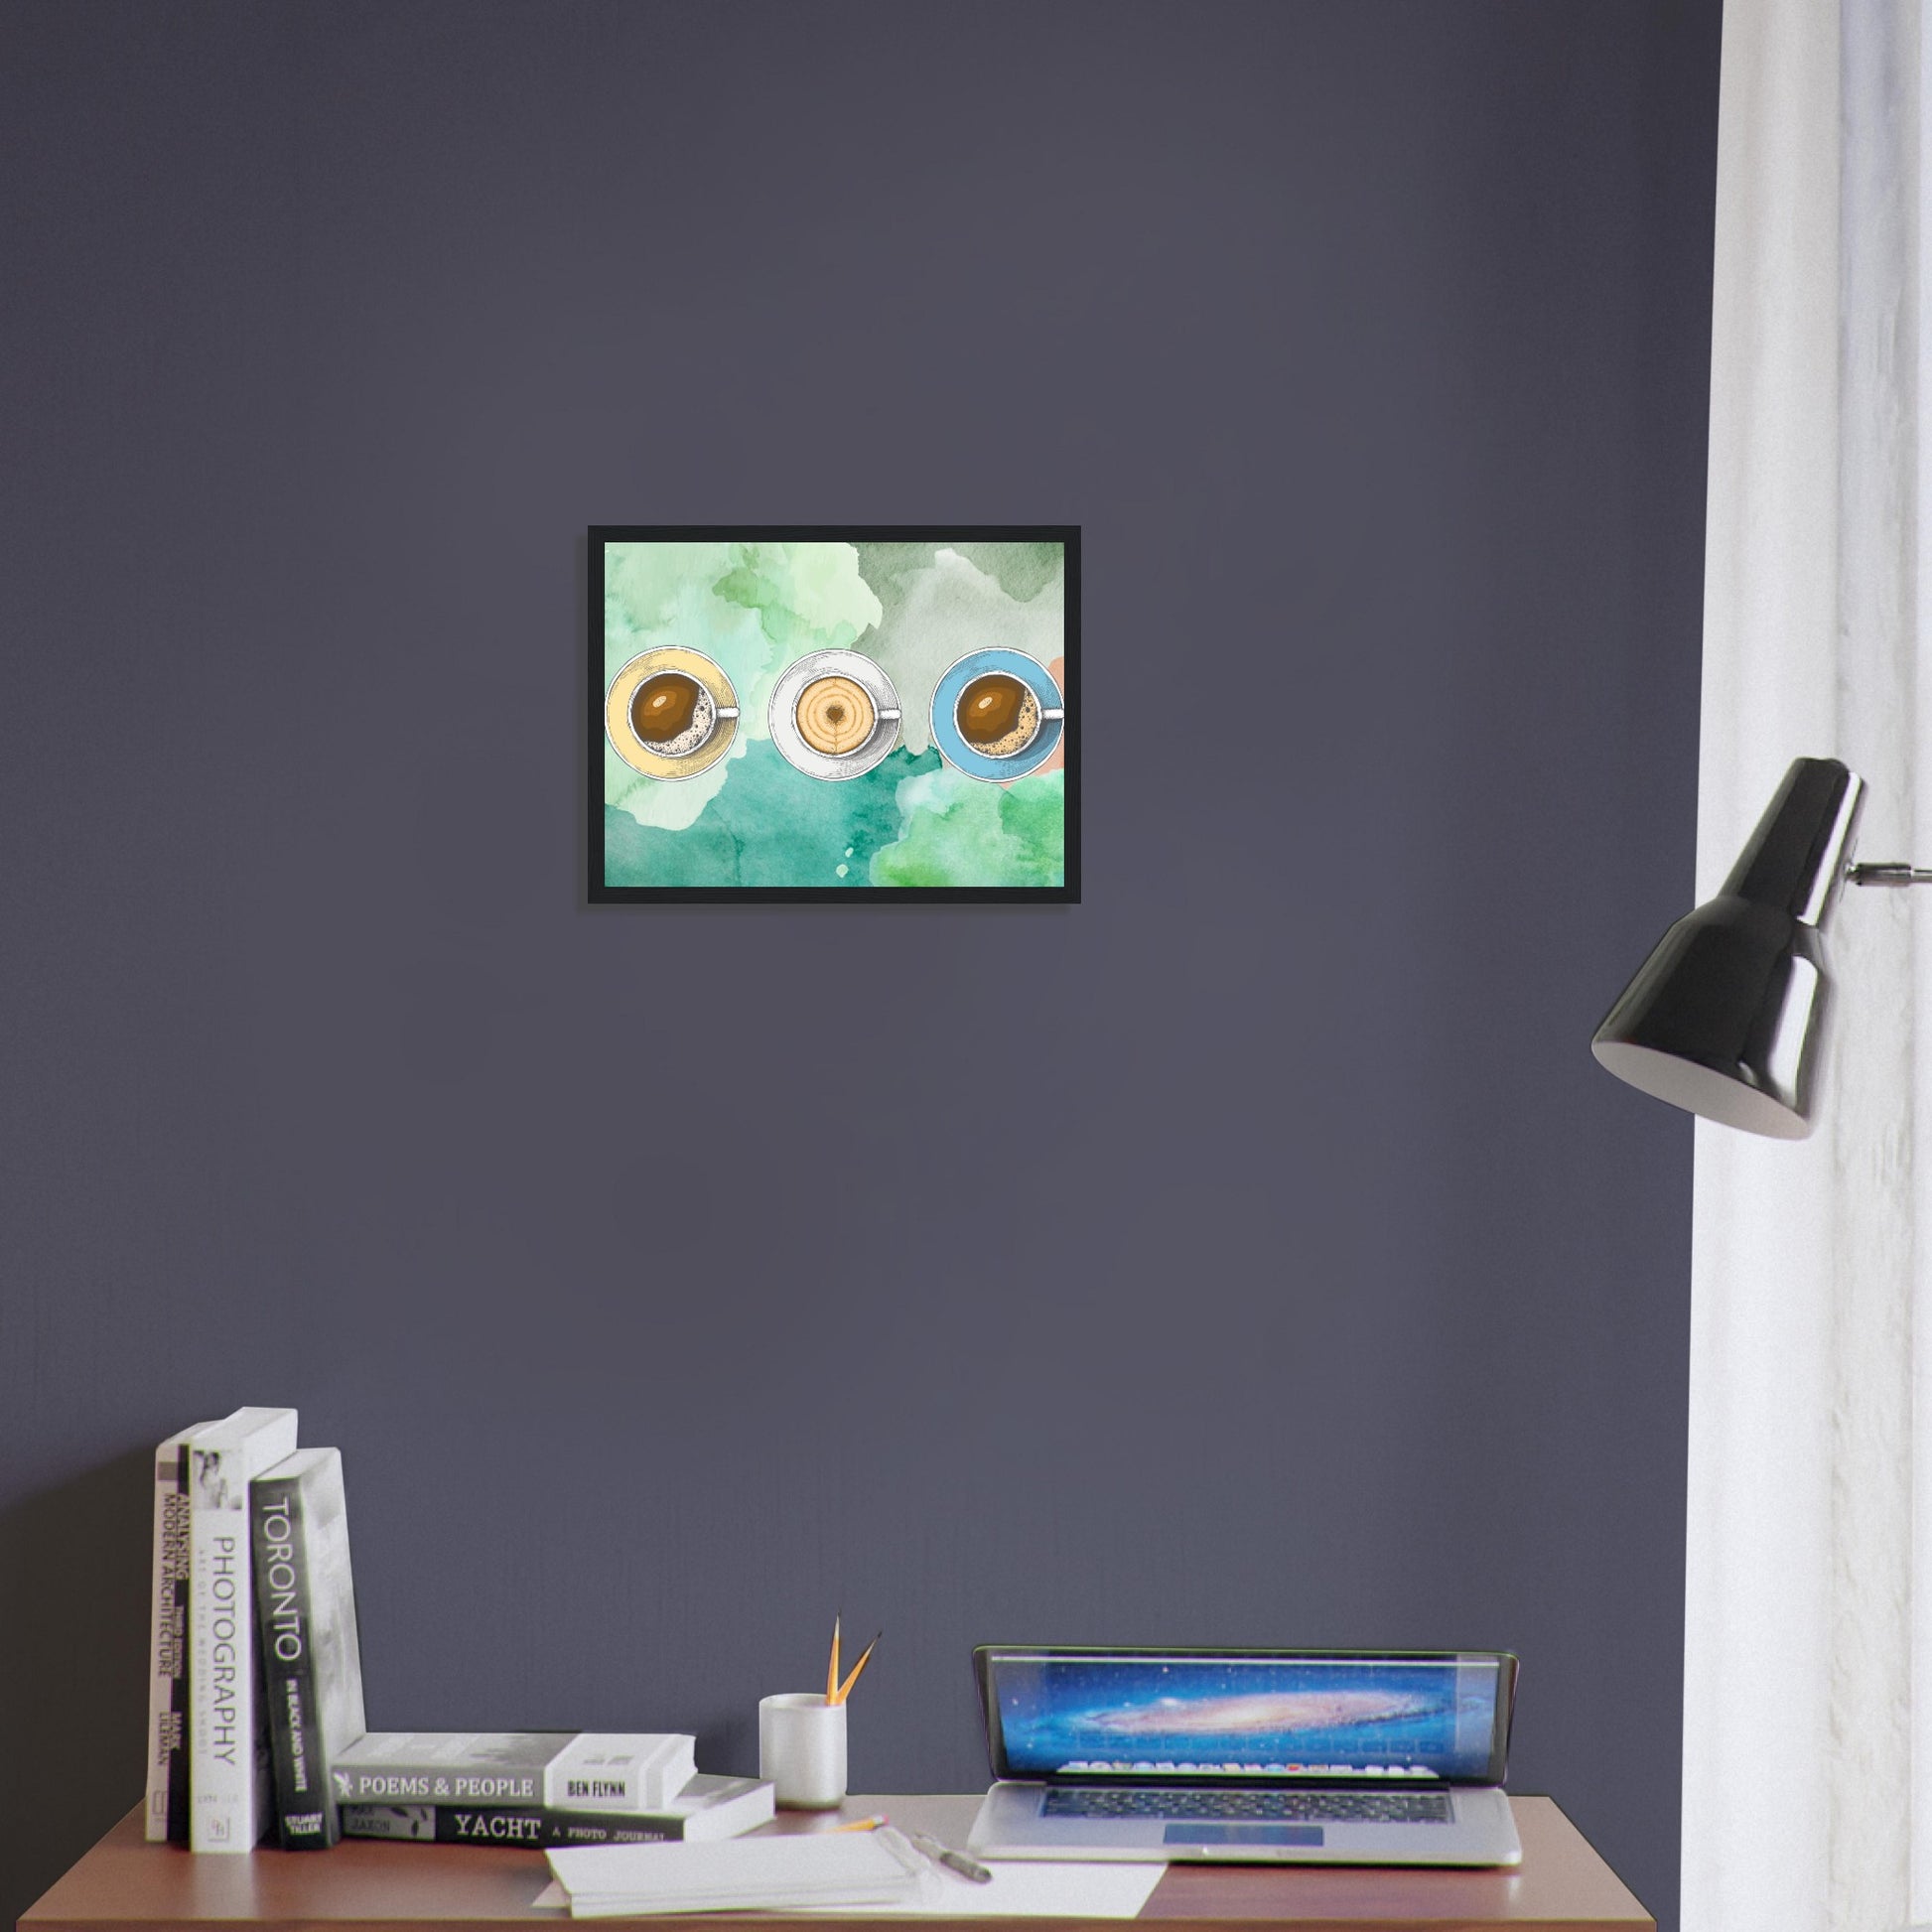 Ein Bild im Schwarzem Rahmen mit buntem Hintergrund in Wasserfarben. Im Vordergrund Sind Drei Tassen Kaffe. Eine Tasse Beige, Weiß und Blau. Das Bild hängt über einem Schreibtisch.